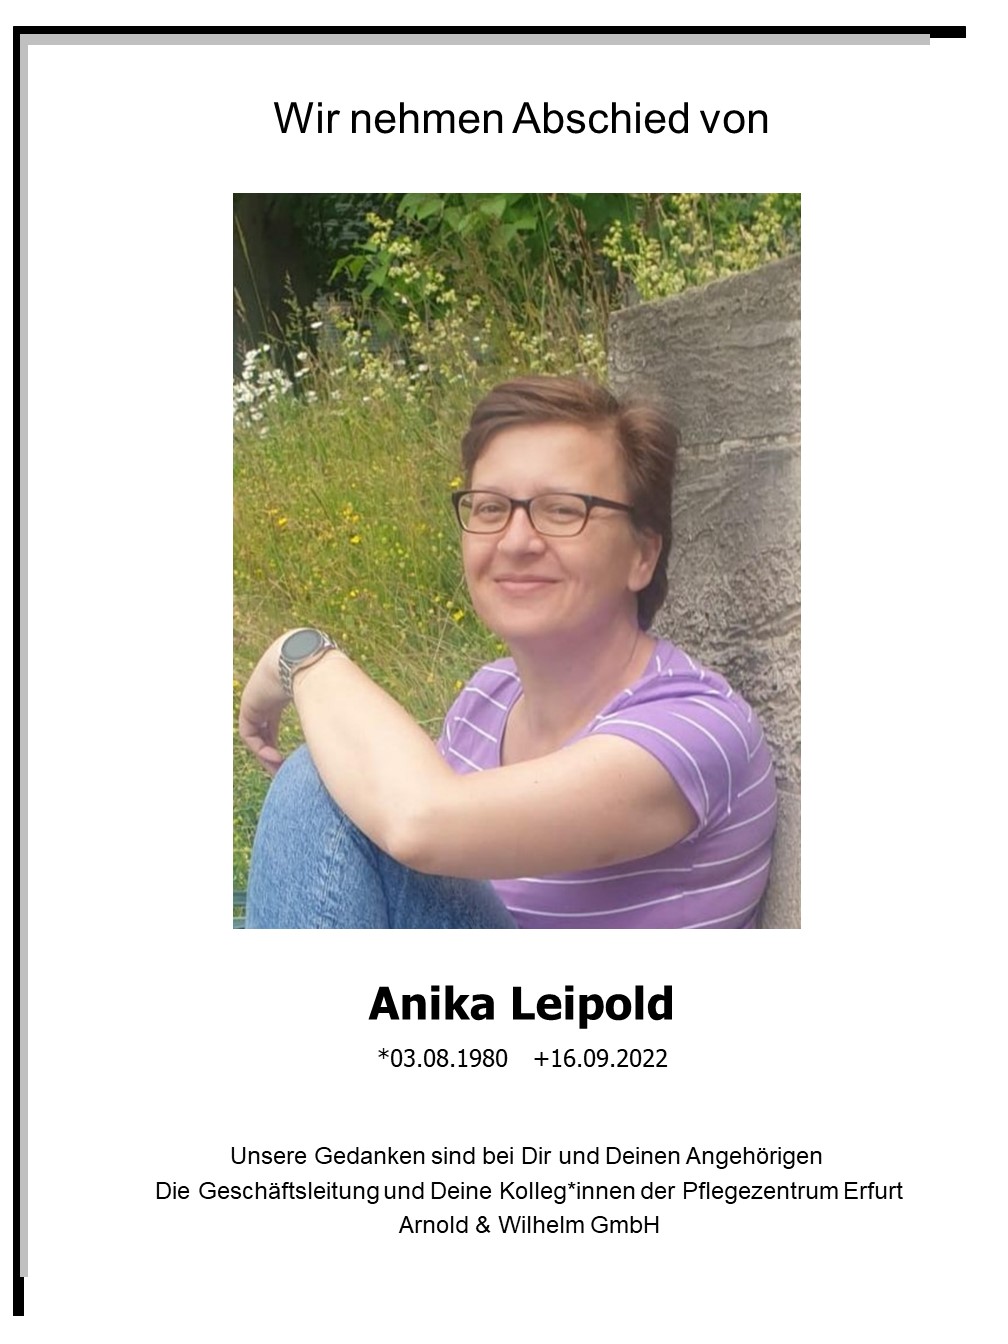 >Abschied Anika Leipold - 29.09.2022